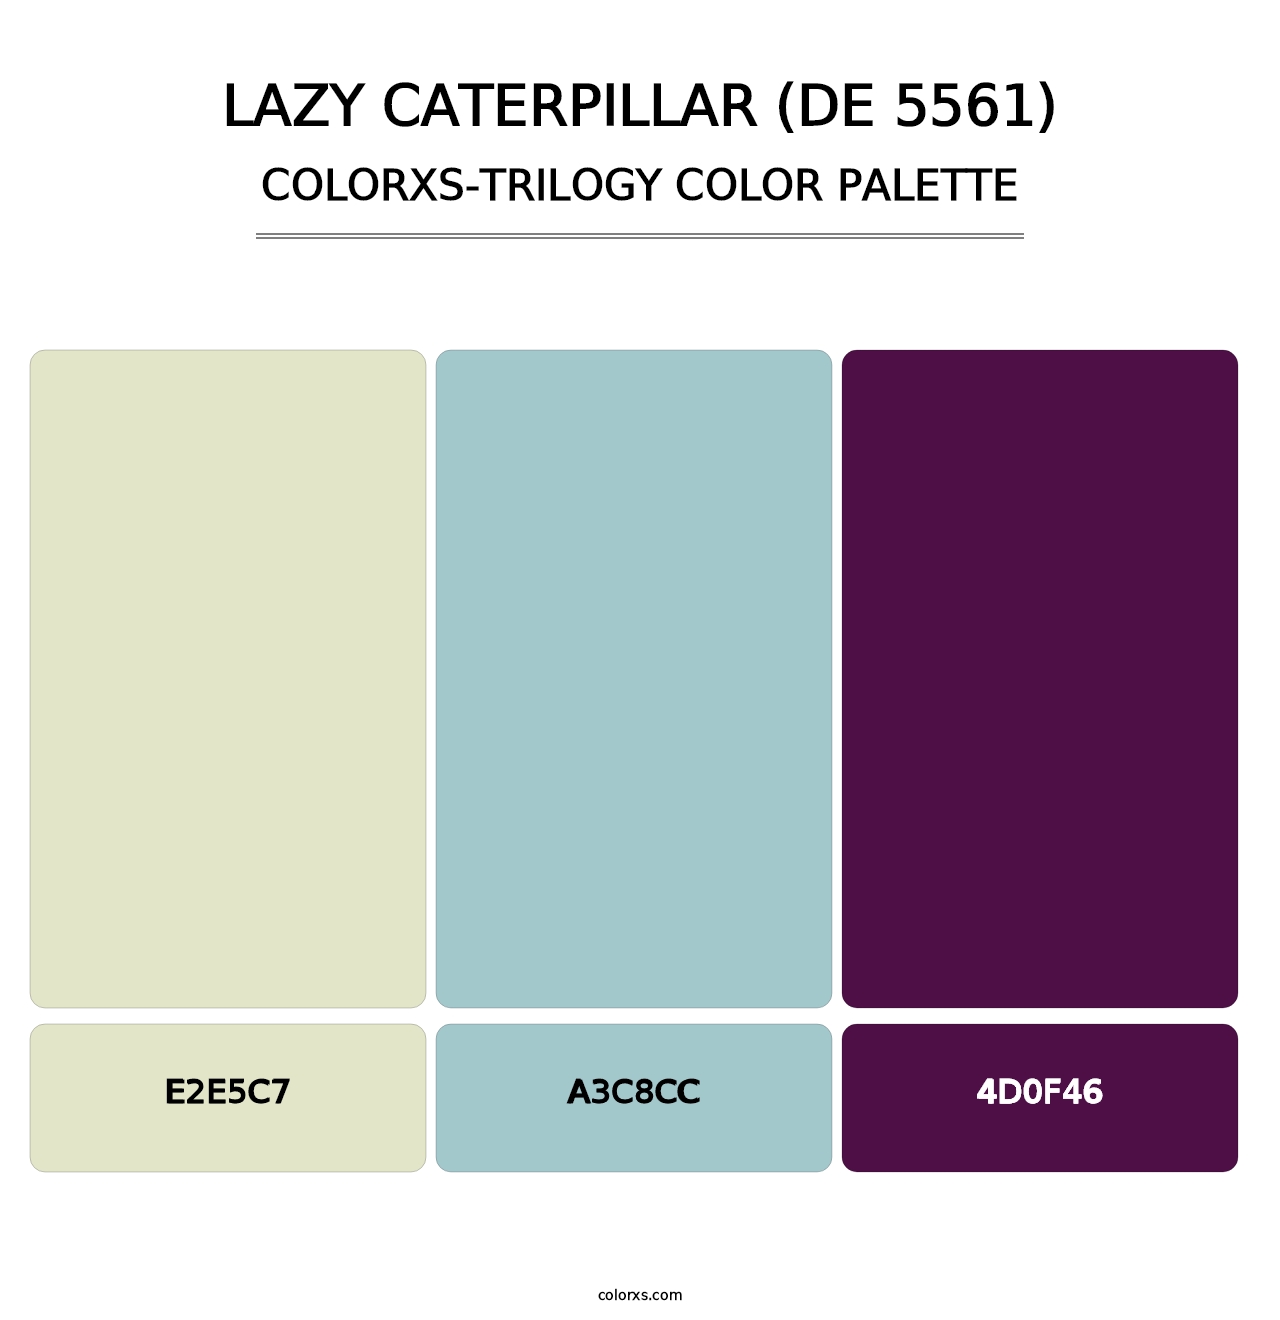 Lazy Caterpillar (DE 5561) - Colorxs Trilogy Palette